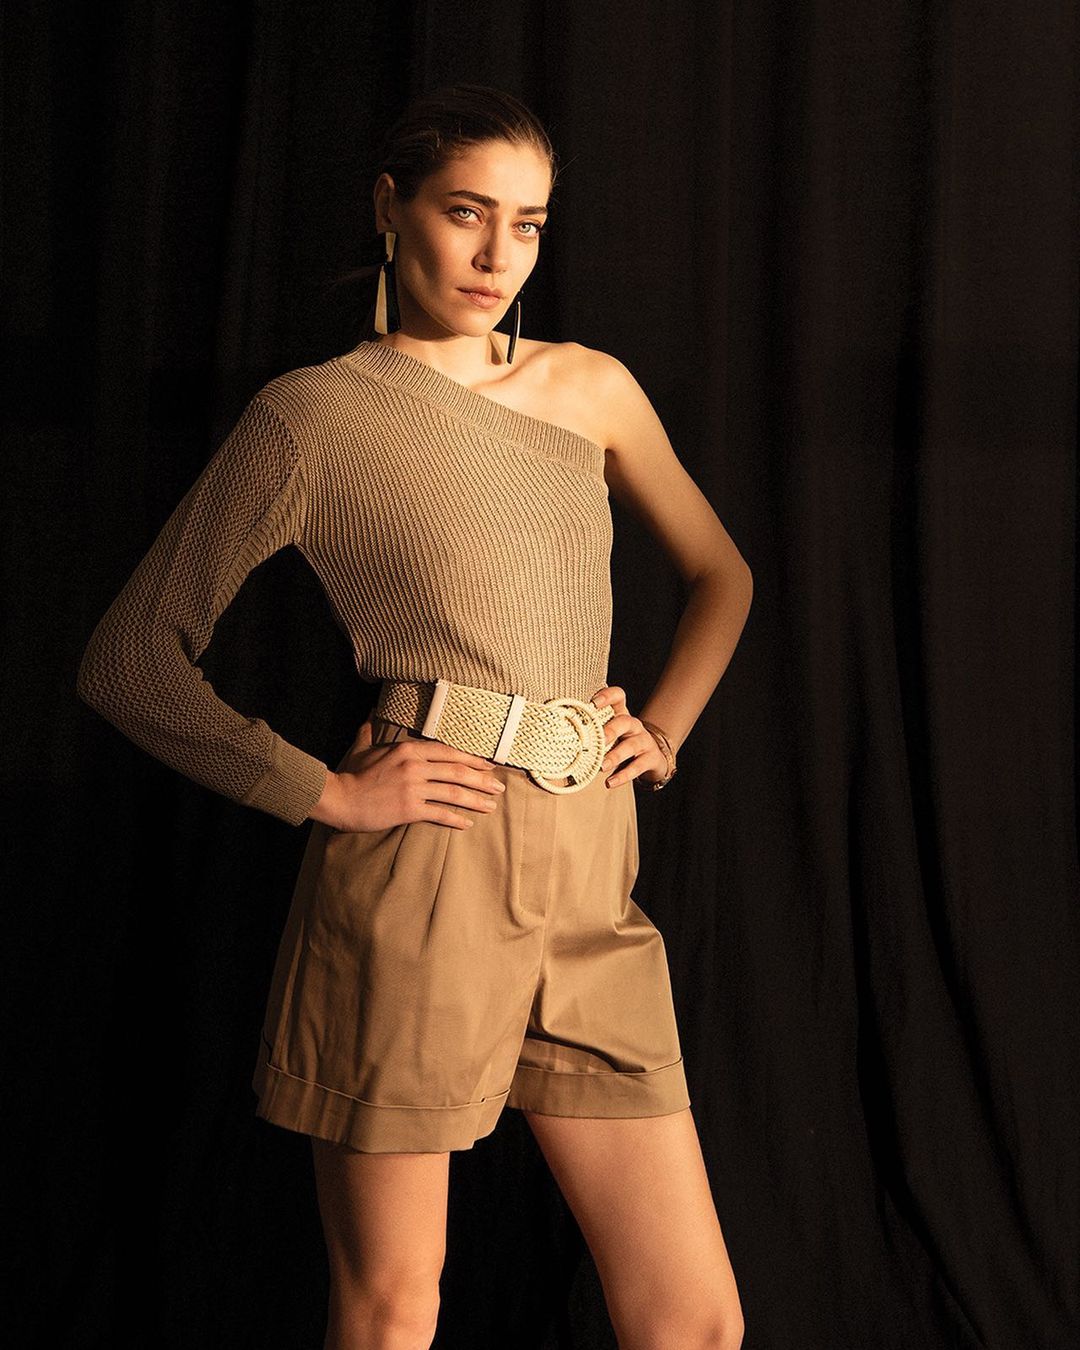 oznur serceler posing in skirt